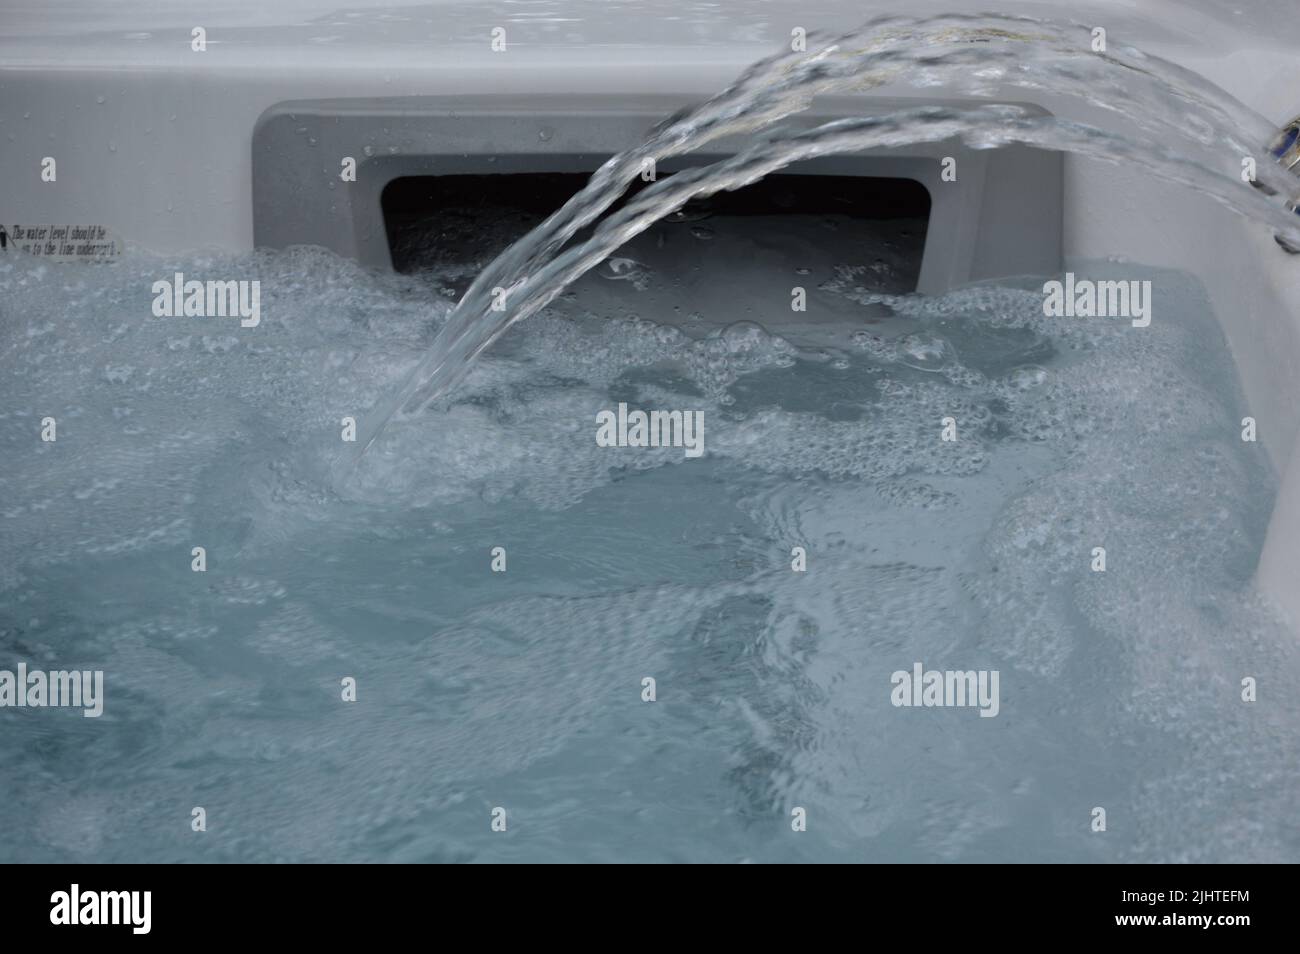 Closeup on Spa, Hot tub Stock Photo